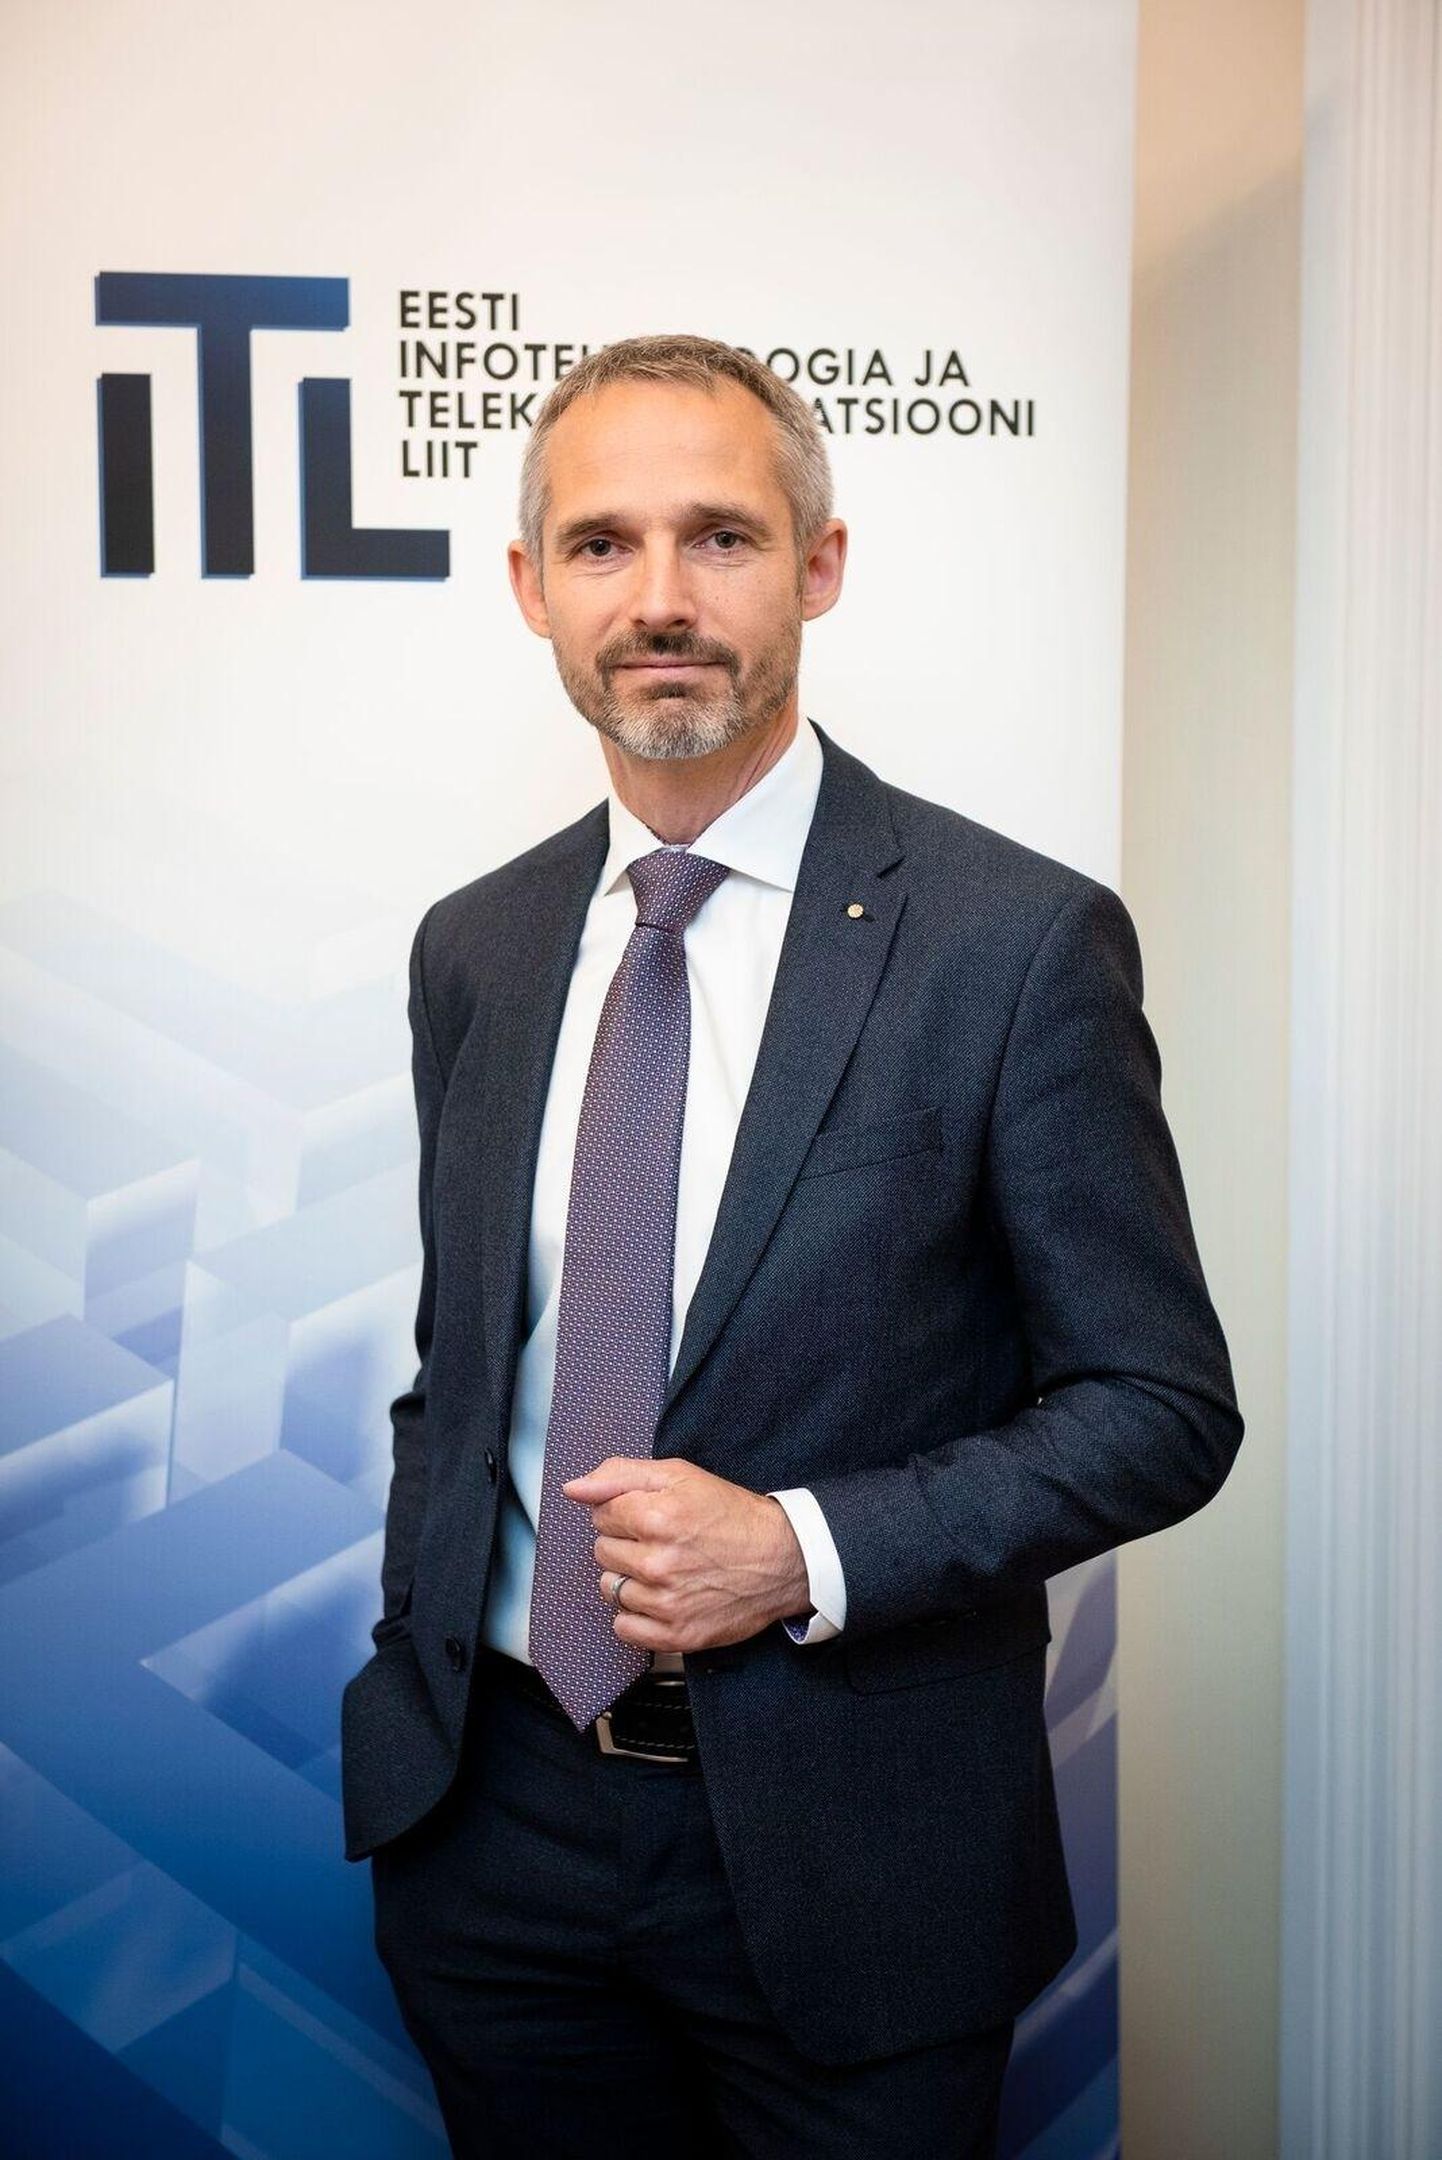 Eesti Infotehnoloogia ja Telekommunikatsiooni Liidu asepresident Ivo Suursoo.